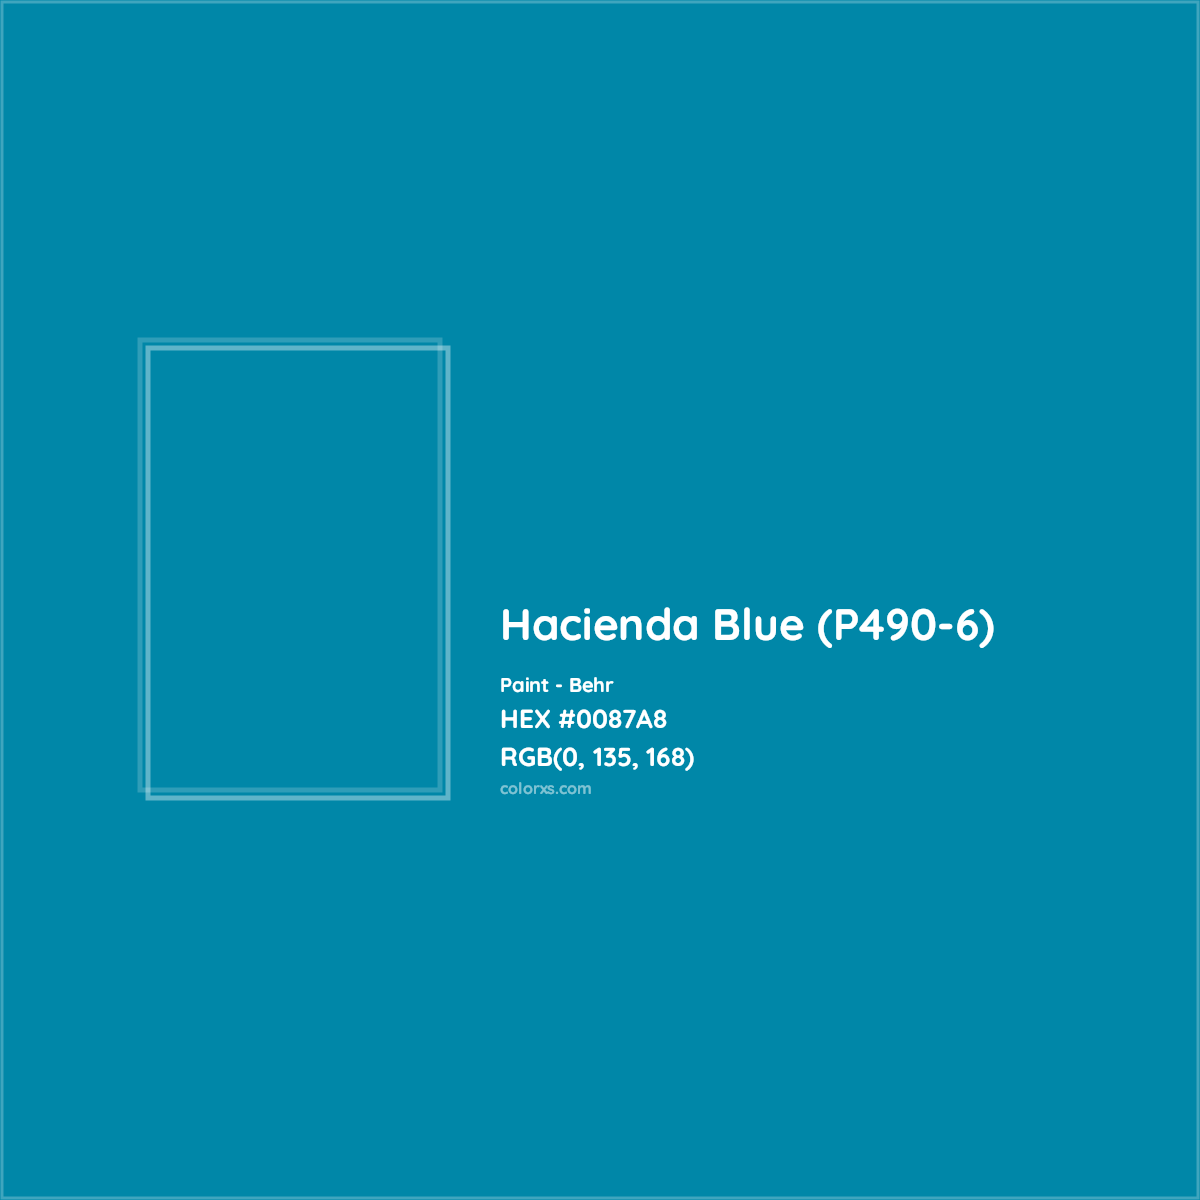 HEX #0087A8 Hacienda Blue (P490-6) Paint Behr - Color Code